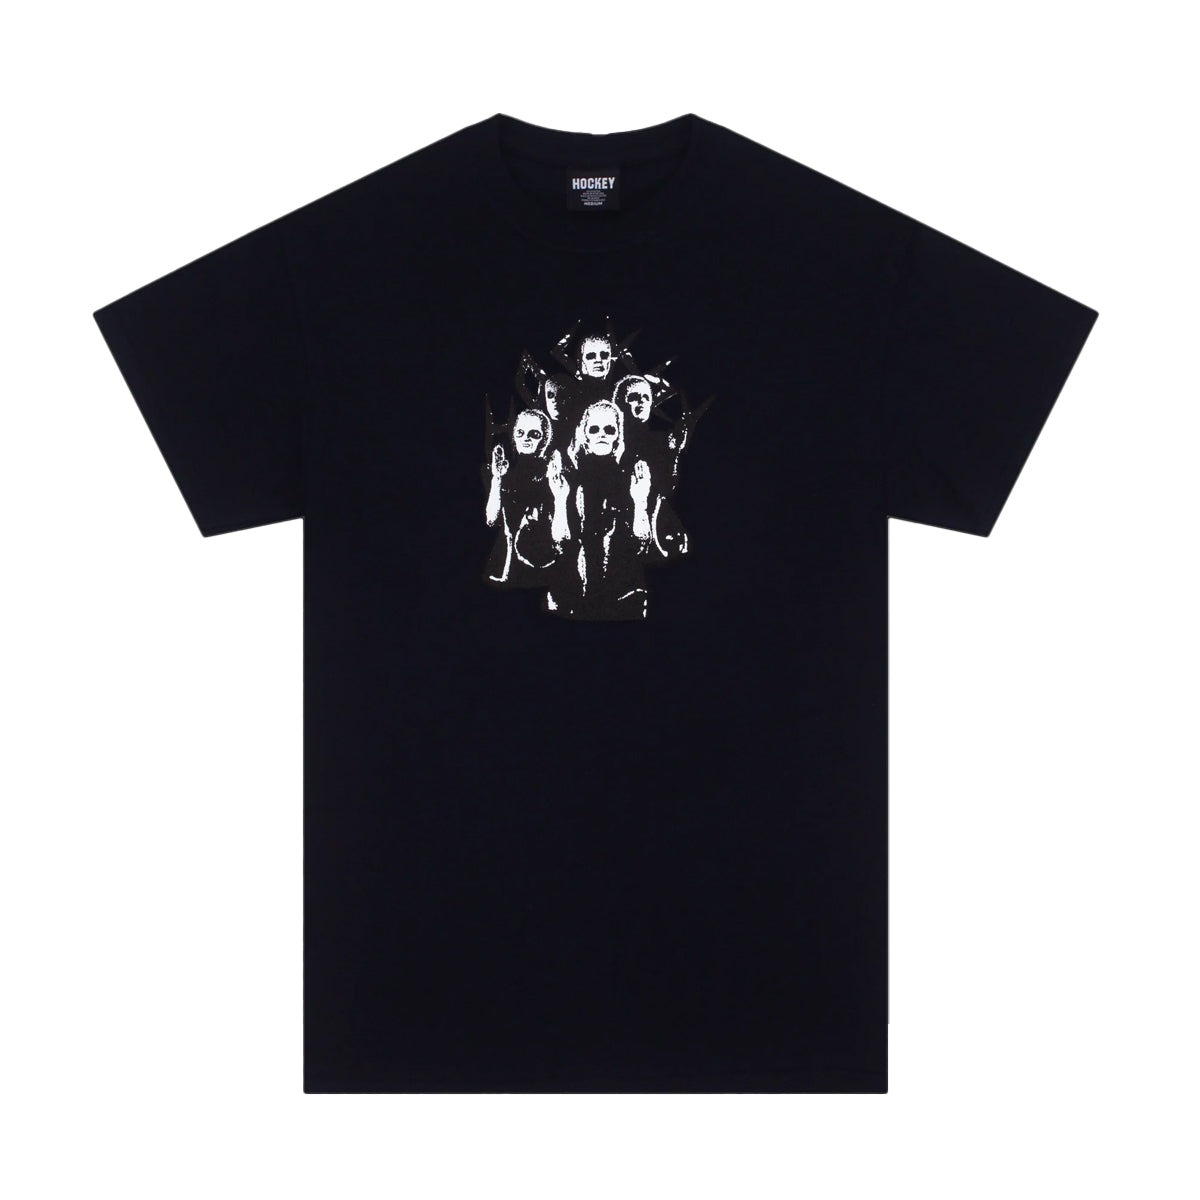 Hockey Granger Short Sleeve T-Shirt (Black) - Apple Valley Emporium